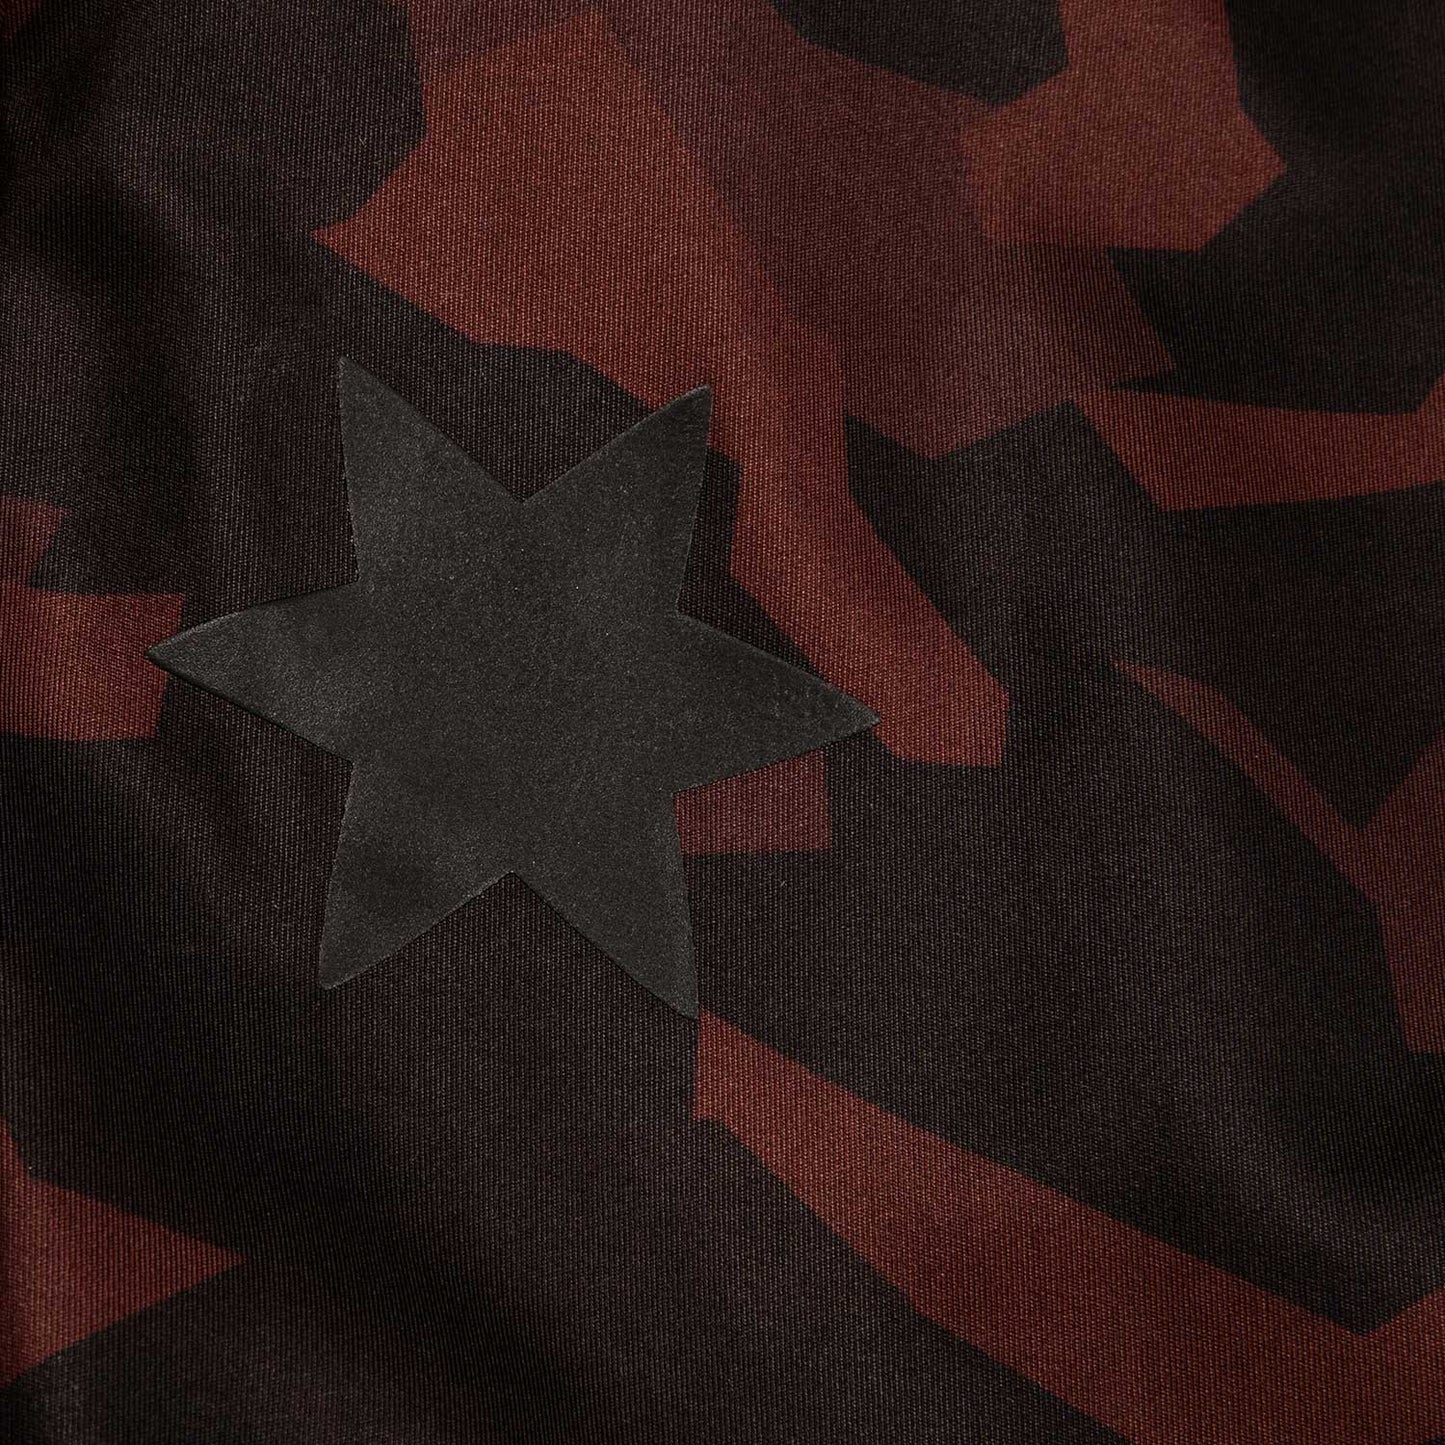 ロングタイツ HGRLT01 Wmns Splinter Eco Combat Tights - Black Camo [レディーズ]